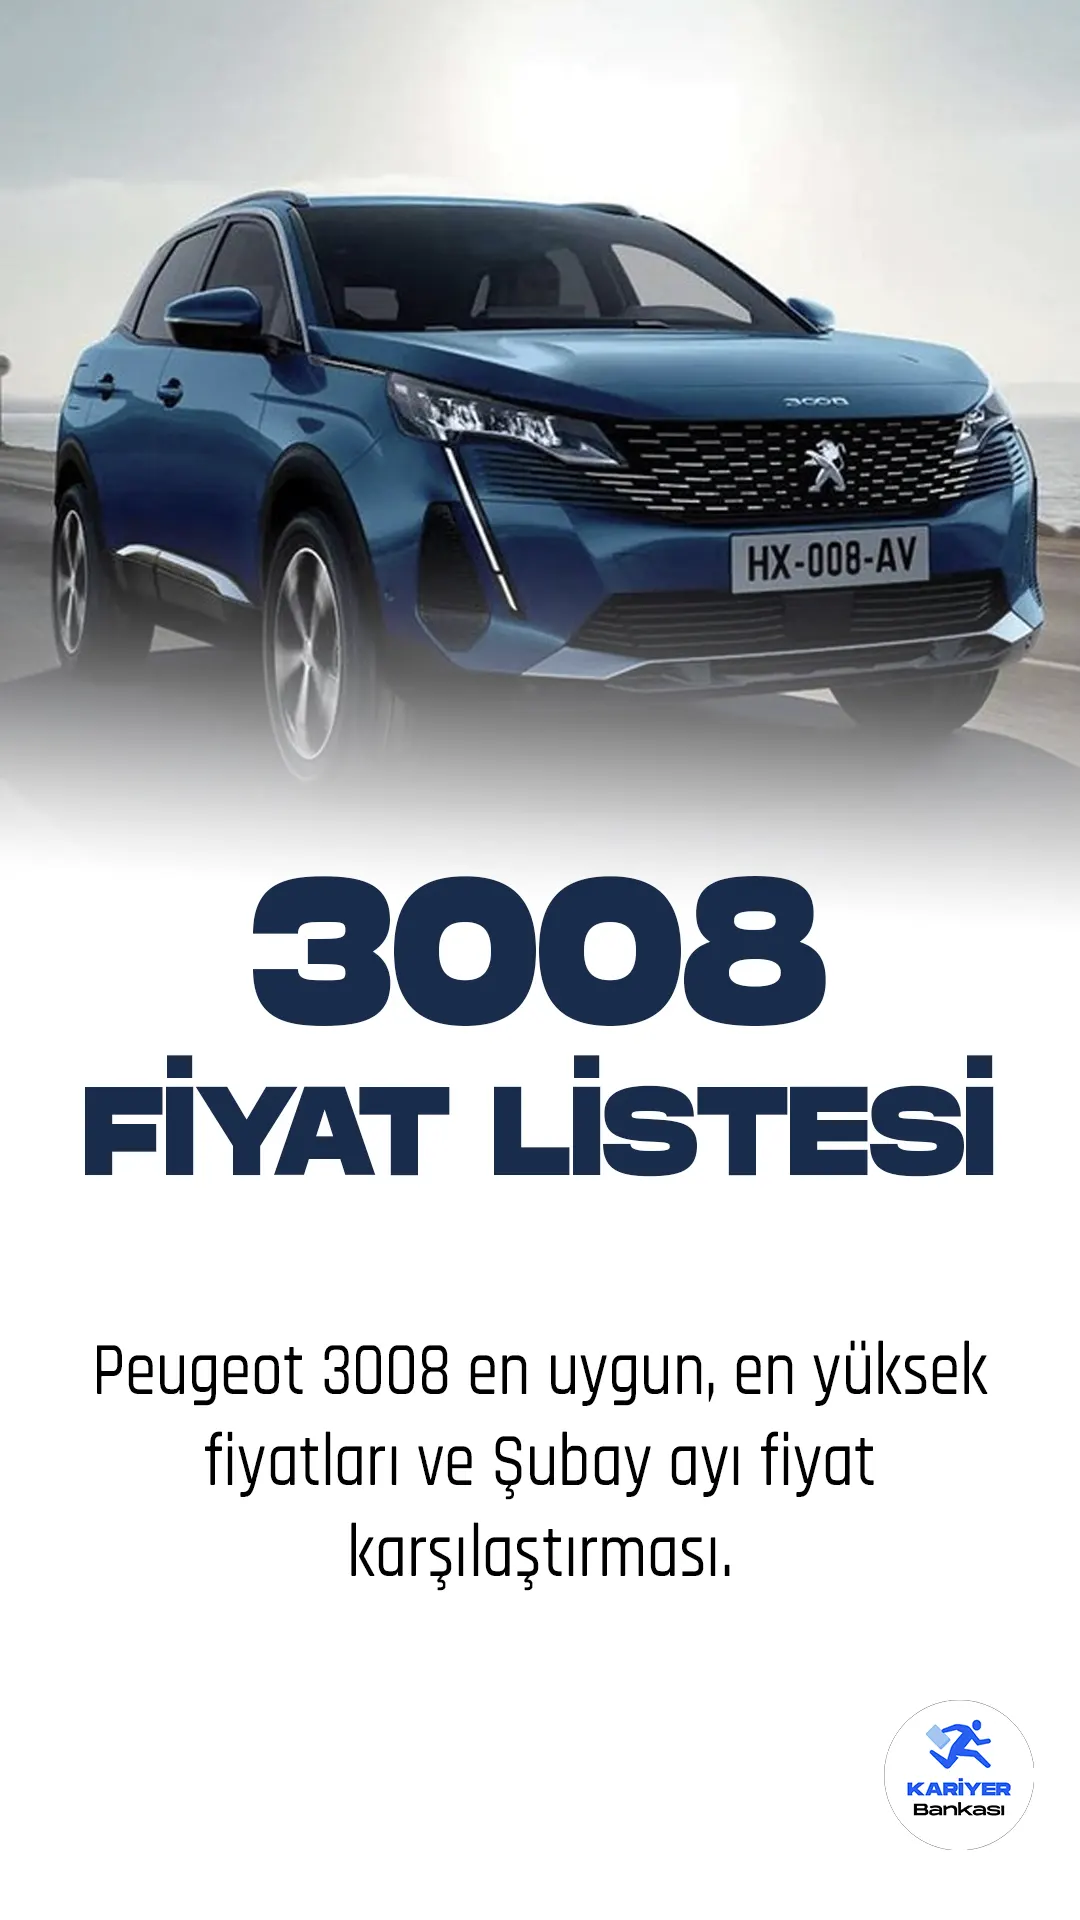 Peugeot 3008 Fiyat Listesi yayımlandı! Peugeot, SUV pazarındaki iddiasını Peugeot 3008 modeliyle sürdürüyor. Yenilikçi tasarımı ve üstün teknolojik donanımıyla dikkat çeken Peugeot 3008, yüksek performansı ve konforu bir arada sunuyor.